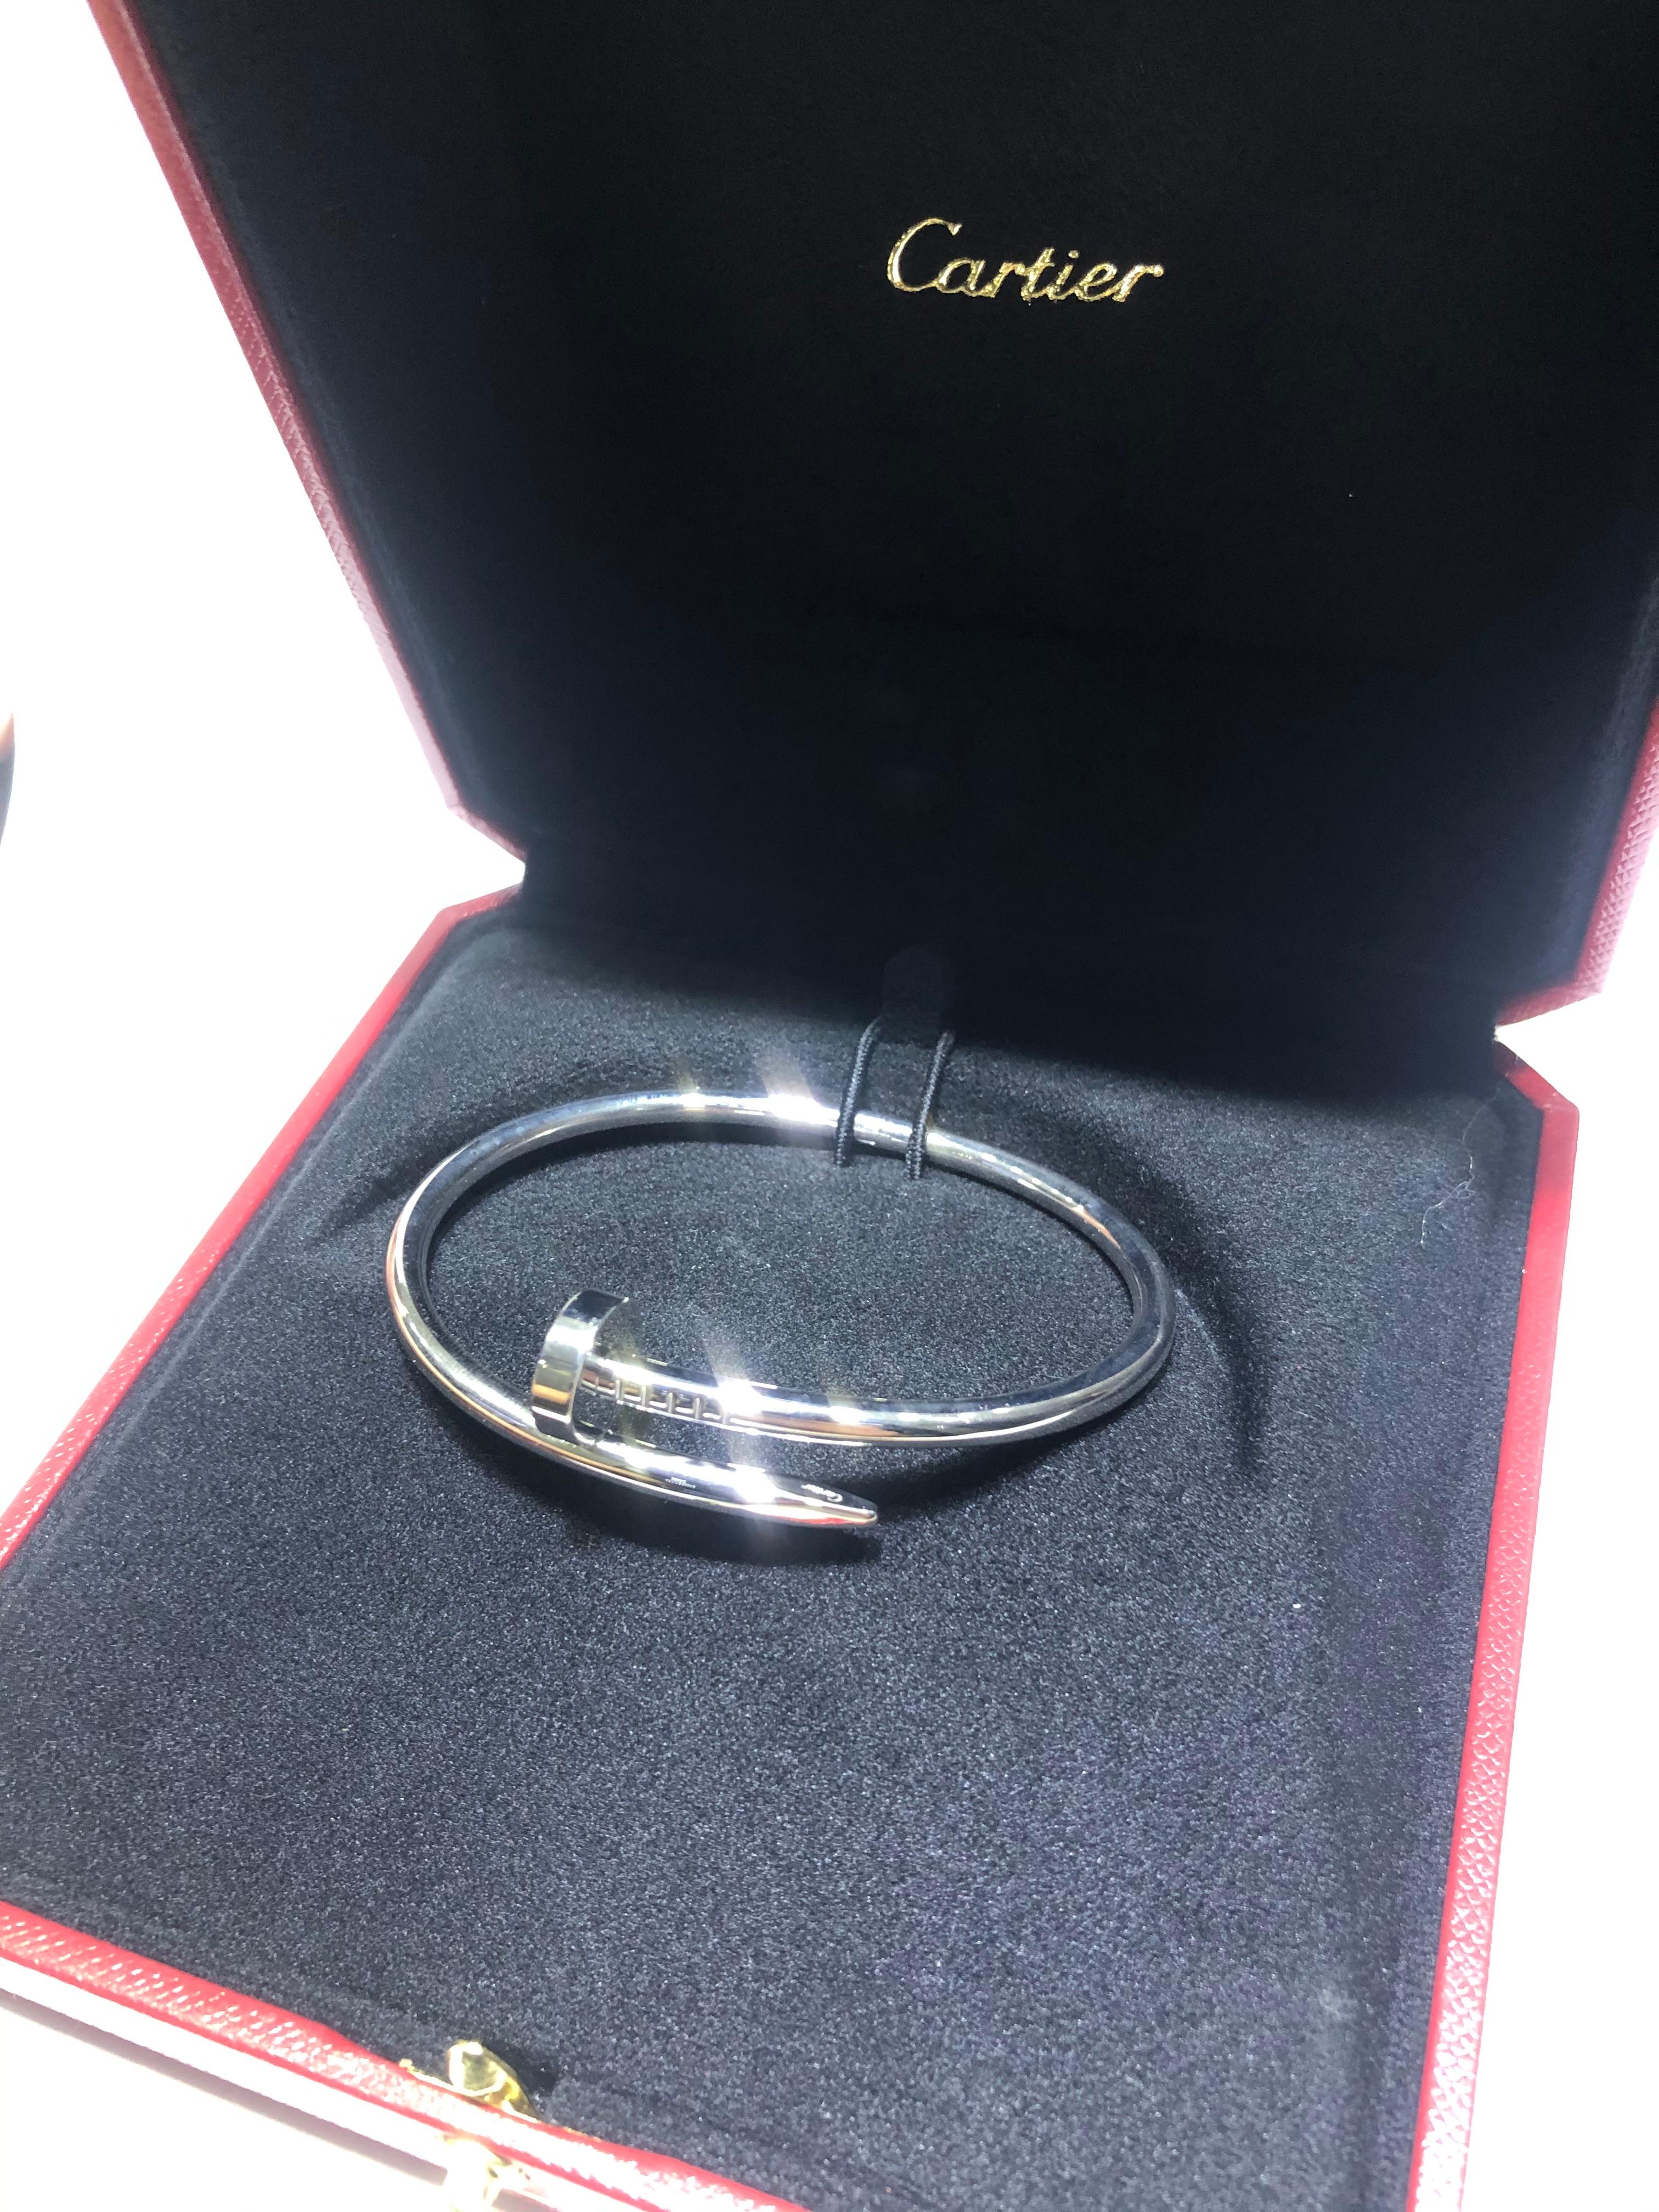 Cartier Juste Un Clou Bracelet clou en or blanc 18 carats Excellent état à MIAMI, FL